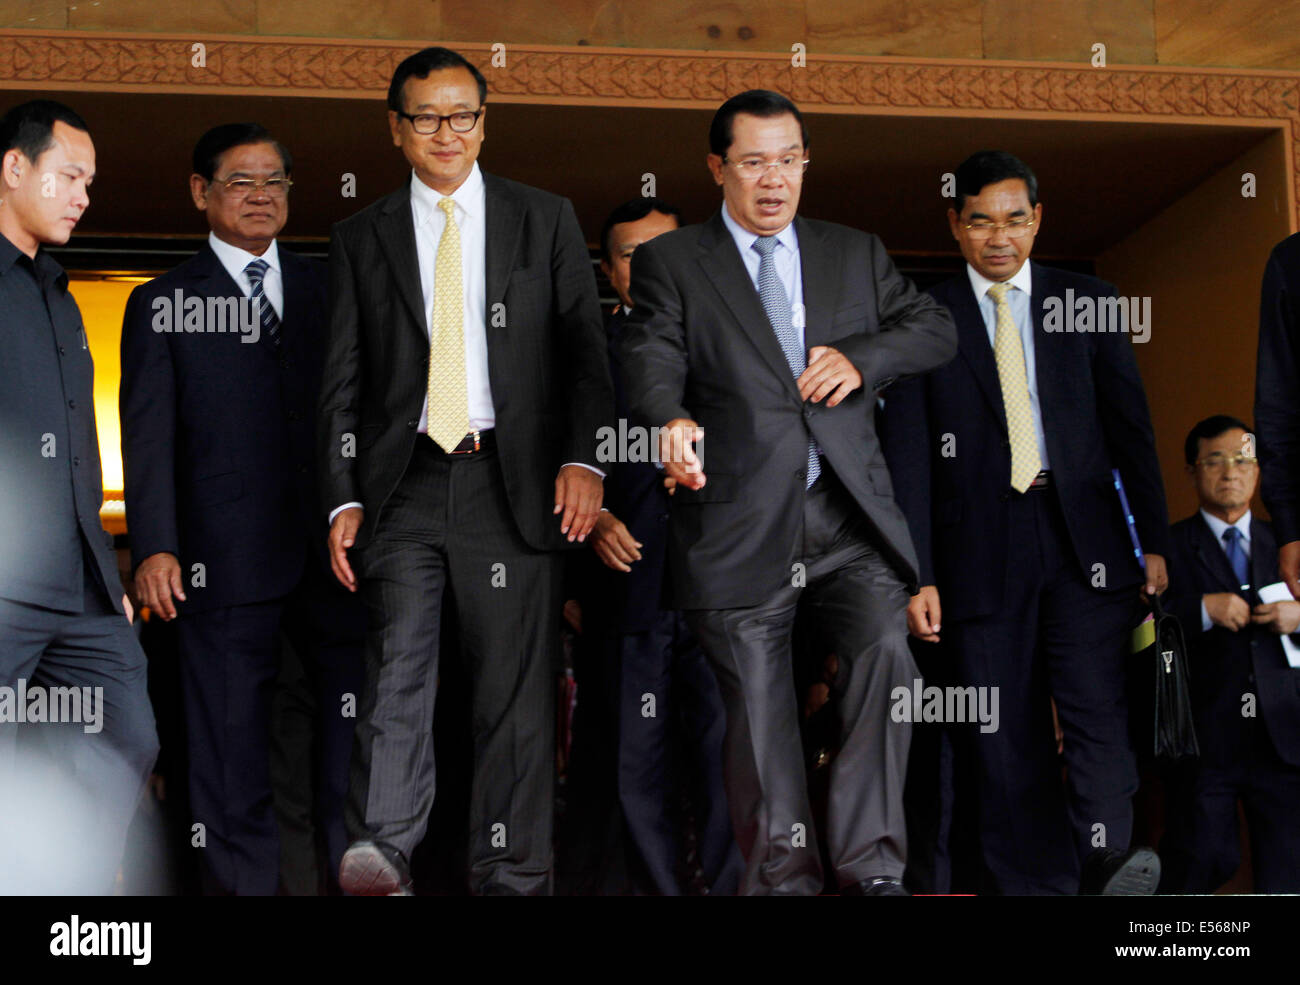 Phnom Penh, Camboya. El 22 de julio de 2014. Primer Ministro de Camboya Hun Sen (R, delantero) y Sam Rainsy (L, delantero), Presidente de la oposición Partido Rescate Nacional de Camboya, salir de una sala de reunión en Phnom Penh, Camboya, 22 de julio de 2014. La oposición del Partido Rescate Nacional de Camboya (CNRP) el martes acordaron poner fin a sus largos años de boicotear el parlamento después de que el partido gobernante acordó reformas electorales, el reparto de poder en el parlamento y una licencia de TV. Crédito: Sovannara/Xinhua/Alamy Live News Foto de stock